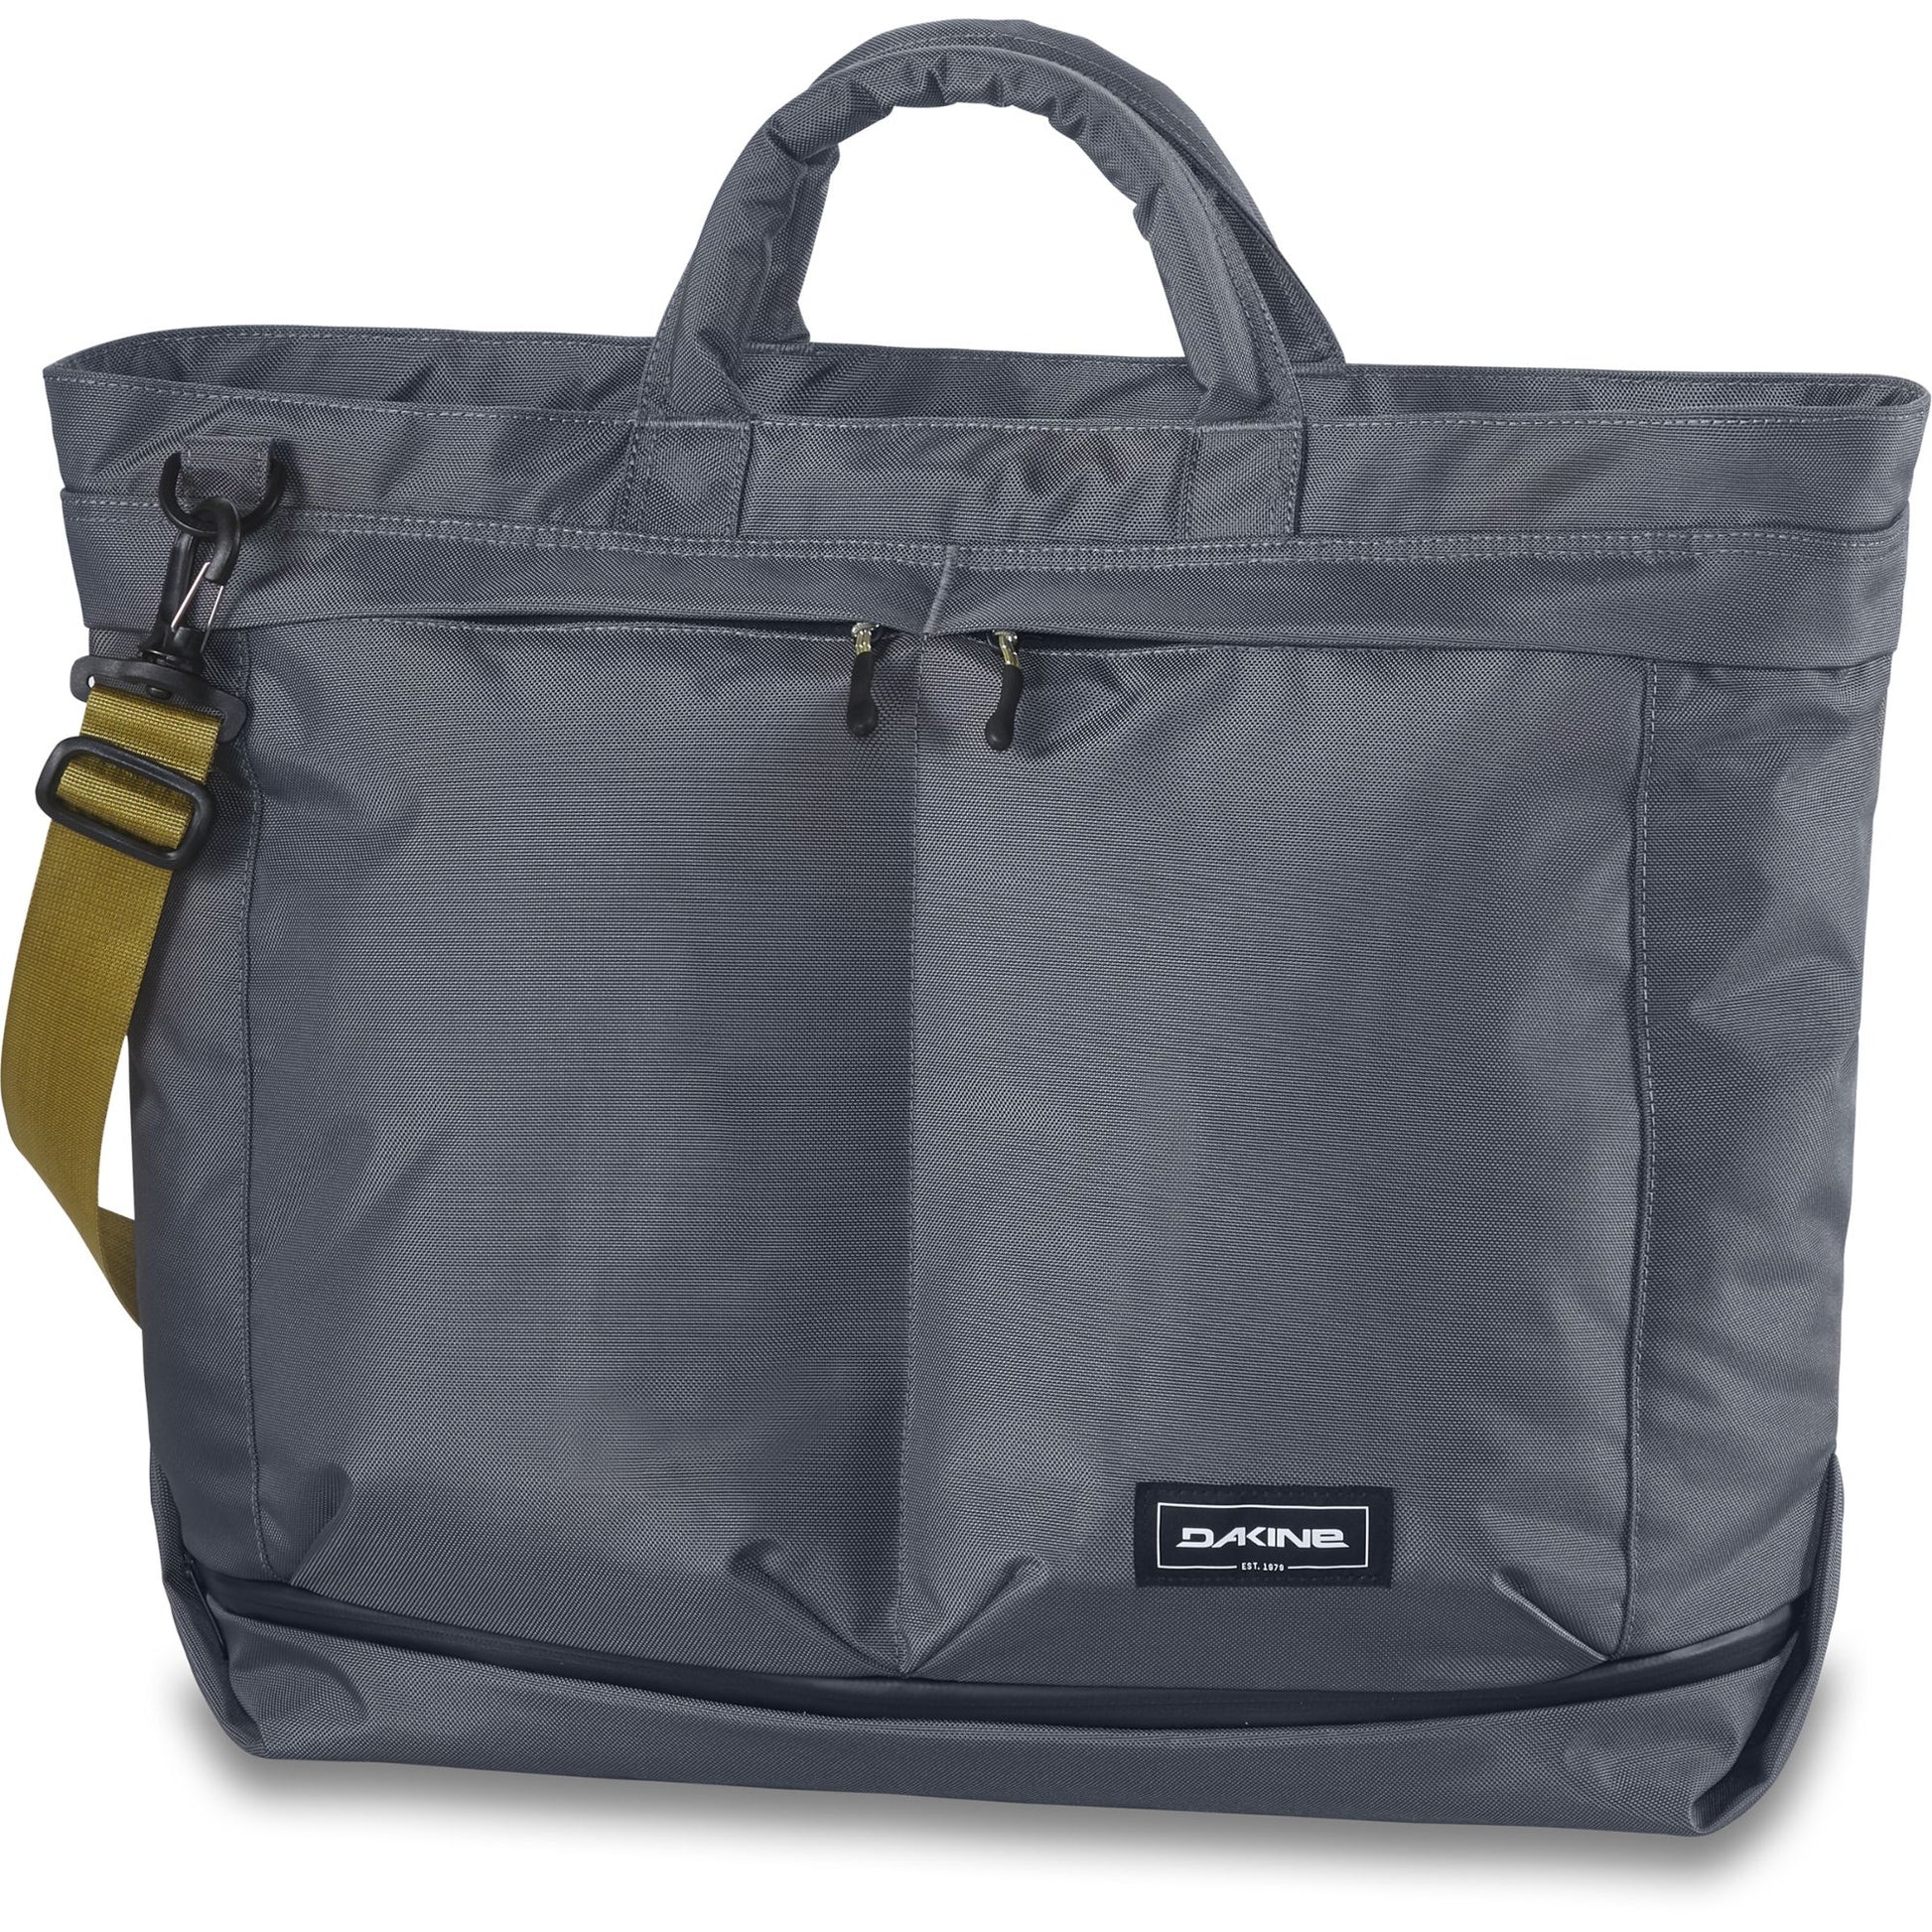 Dakine Verge Weekender Tote 34L Castlerock Ballistic OS Travel Bags